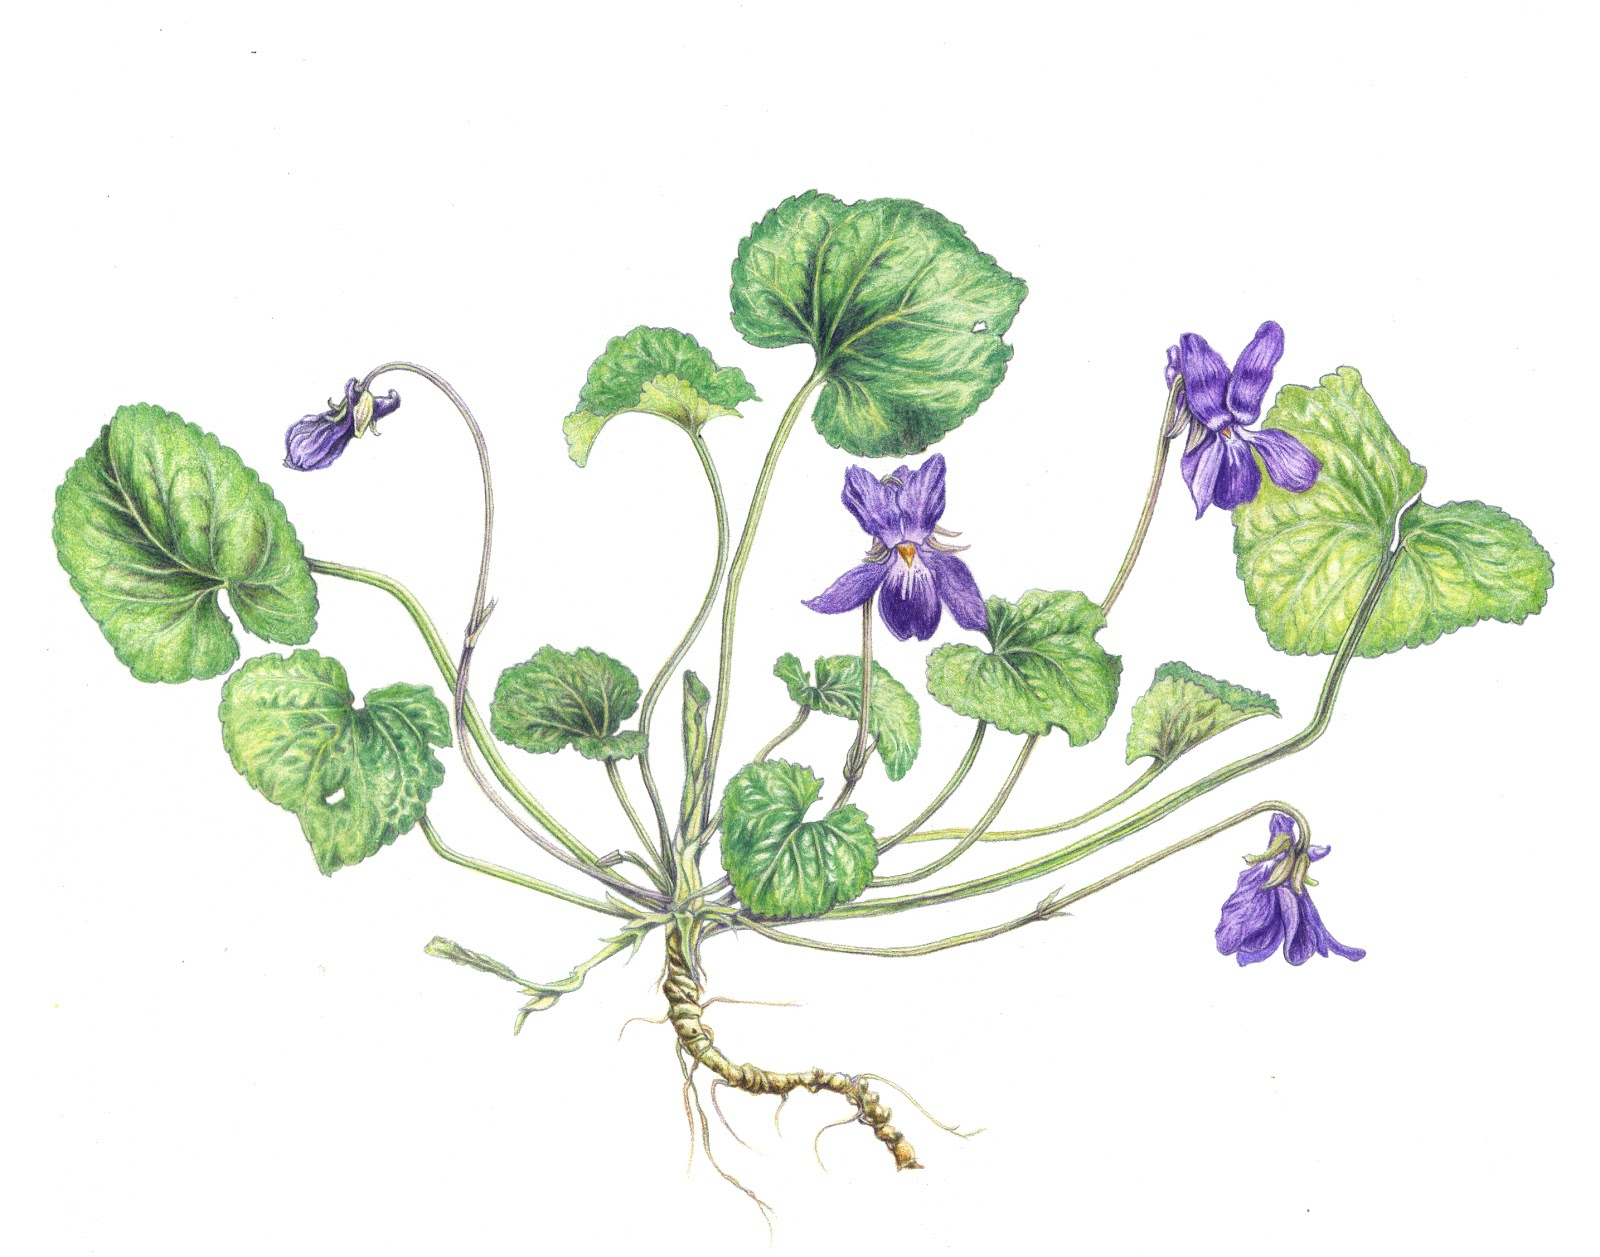 Violette Fleur Dessin Cool Photos Illustrations Botaniques Violette Et Fin De L Hiver